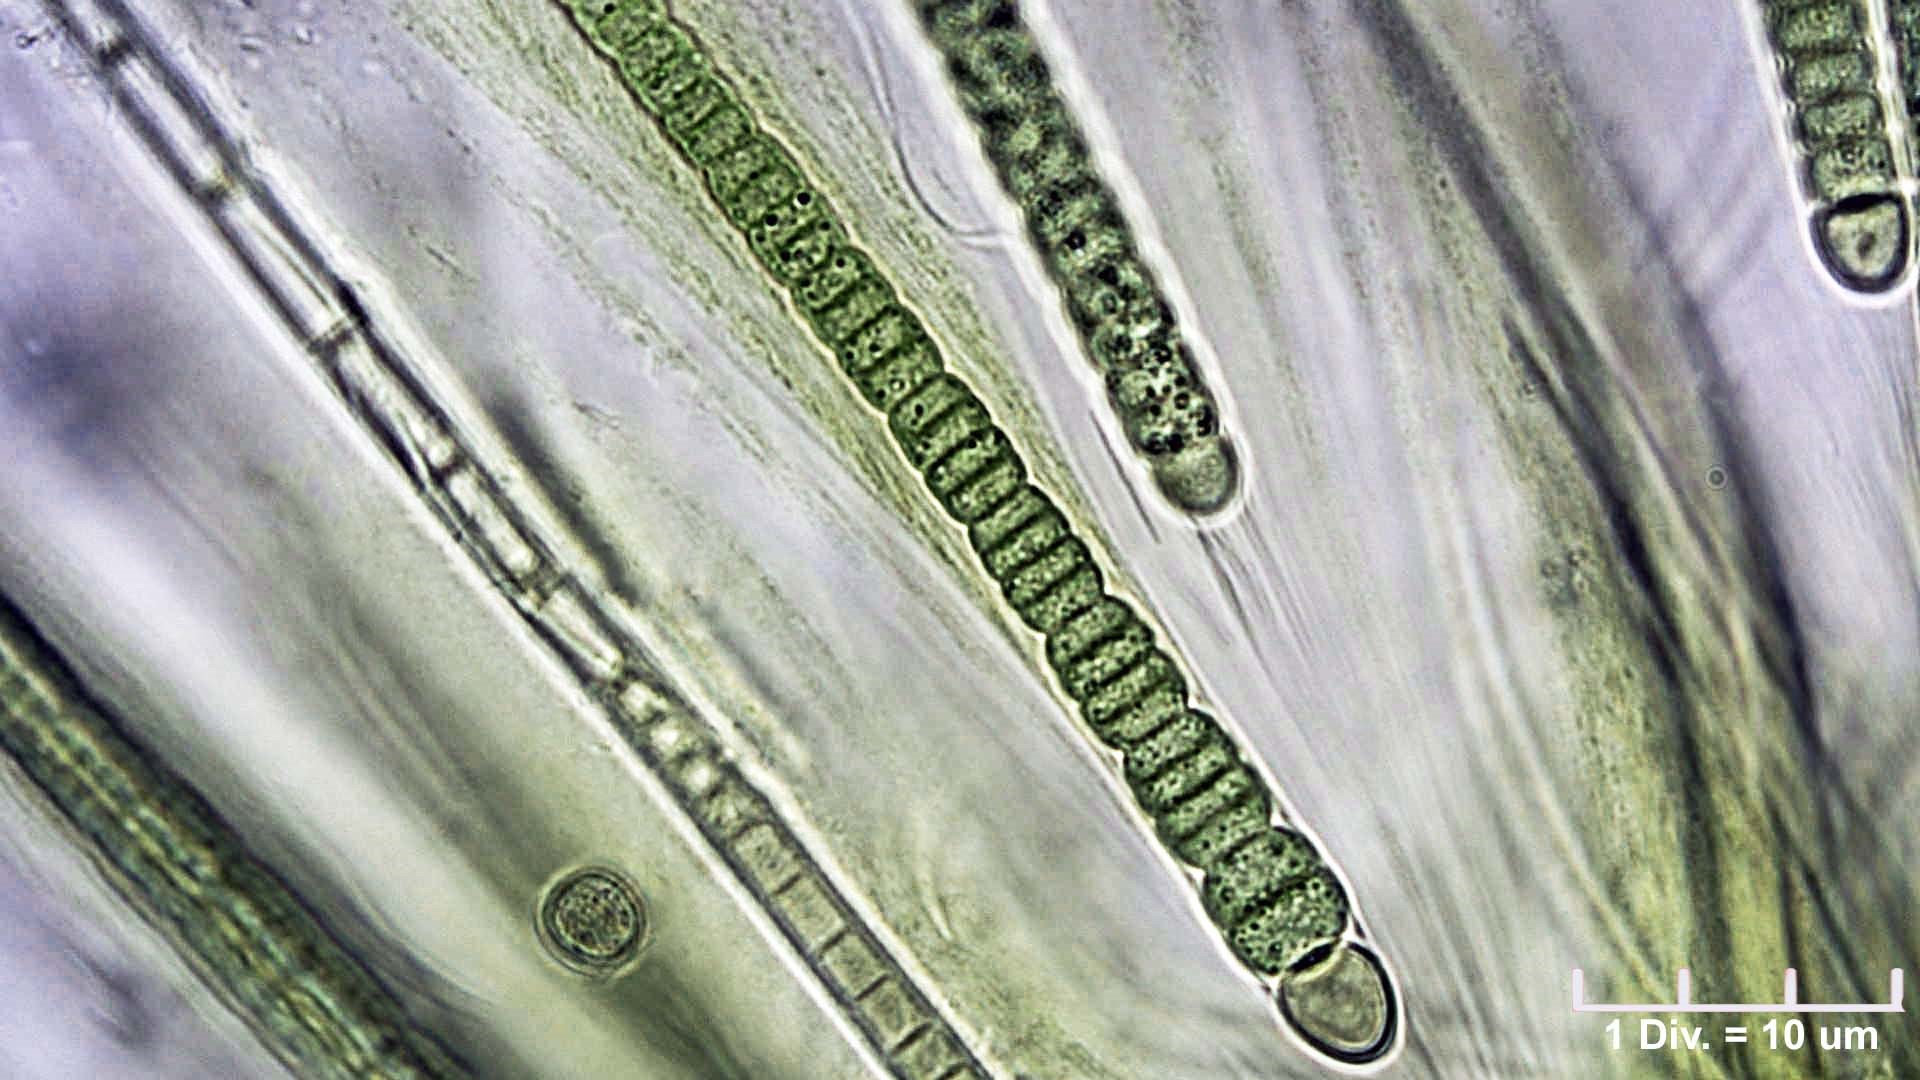 ././Cyanobacteria/Nostocales/Gloeotrichiaceae/Gloeotrichia/pisum/gloeotrichia-pisum-488.jpg